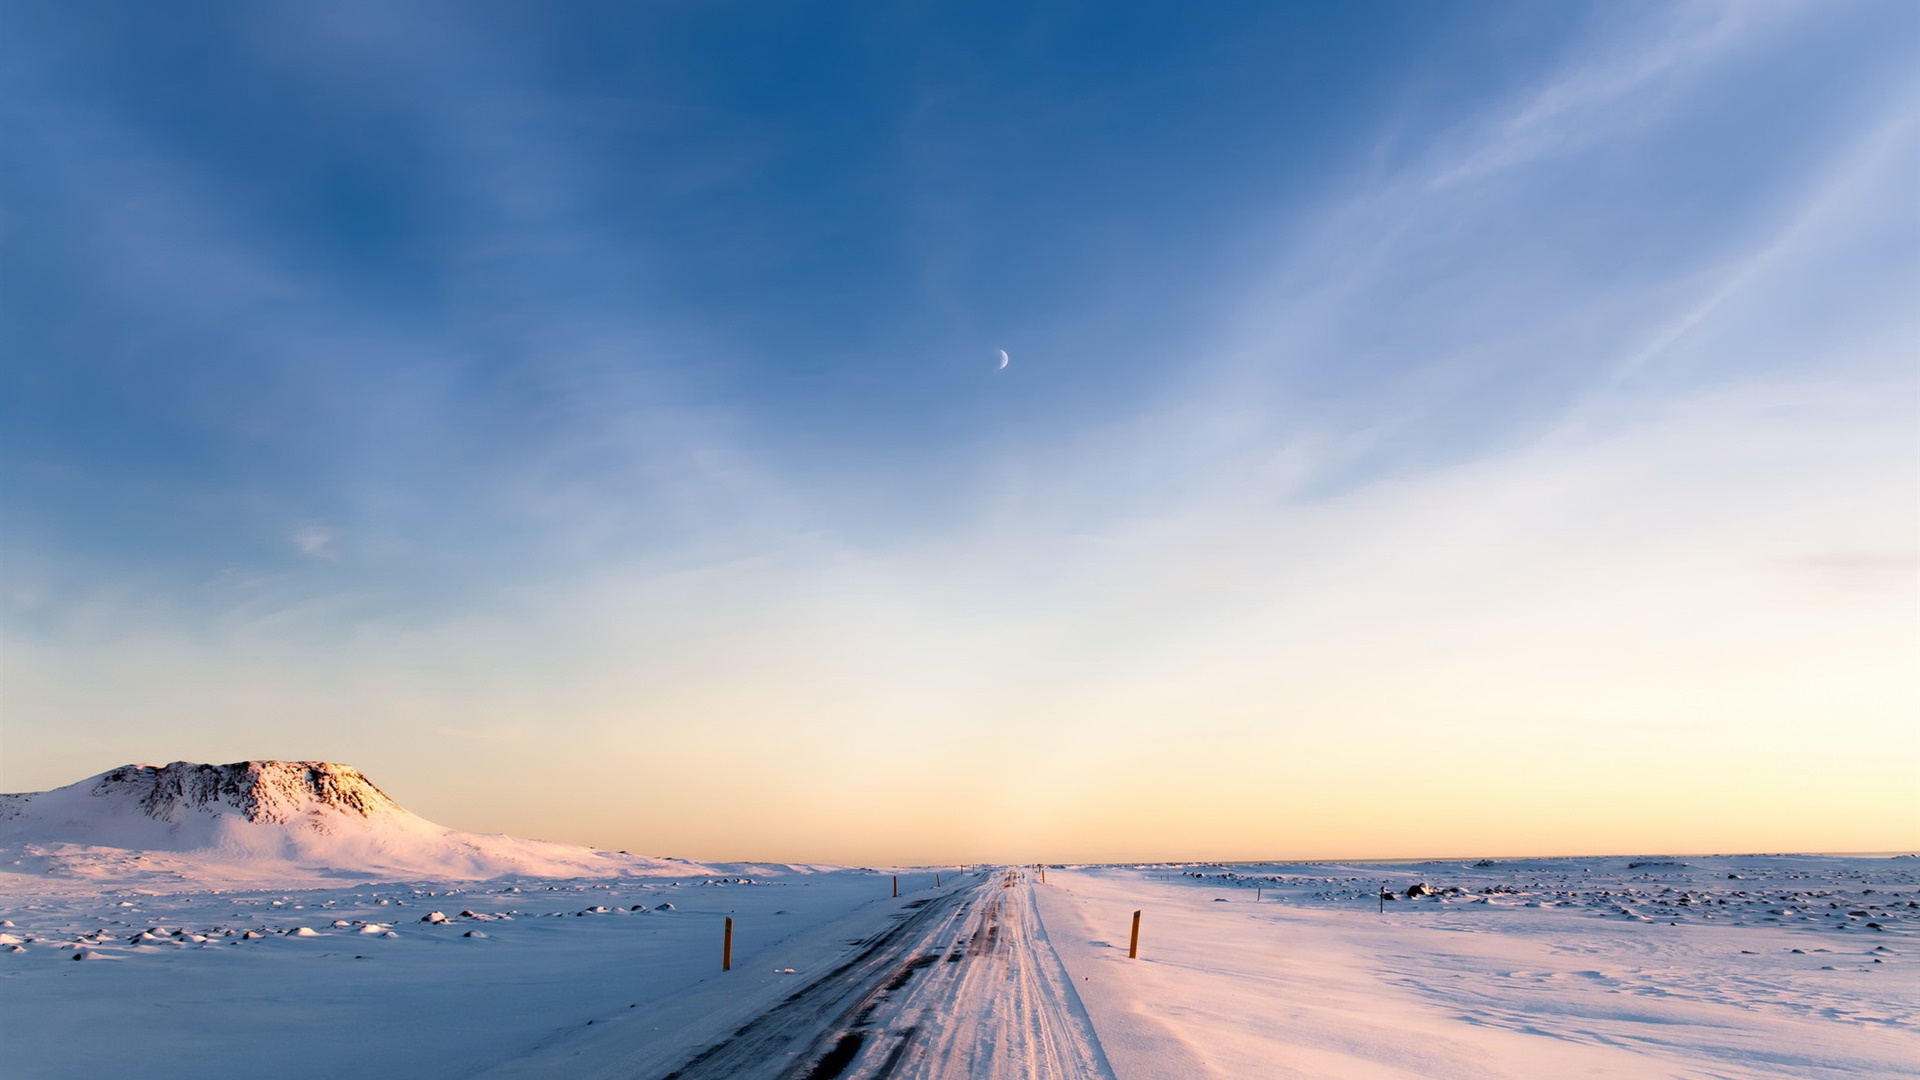 冰岛 冬季 雪 道路 早晨 天空桌面壁纸 19x1080 壁纸下载 Cn Hdwall365 Com